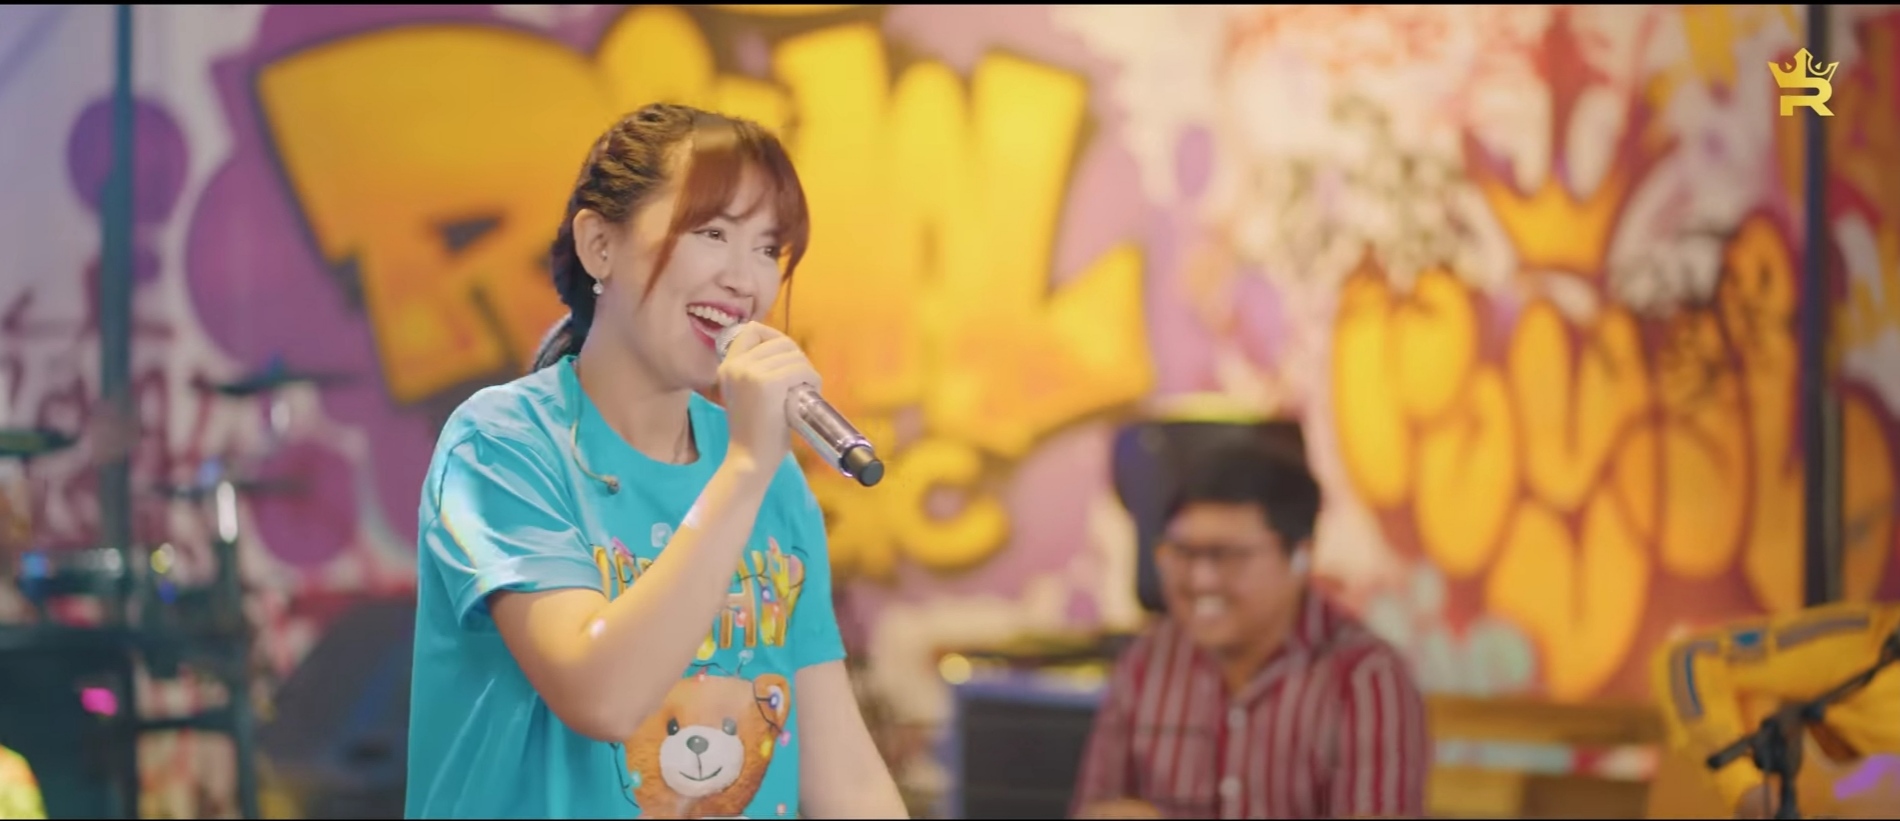 Lirik dan Terjemahan Lagu Pambasilet Happy Asmara yang Lagi Viral di Tiktok 